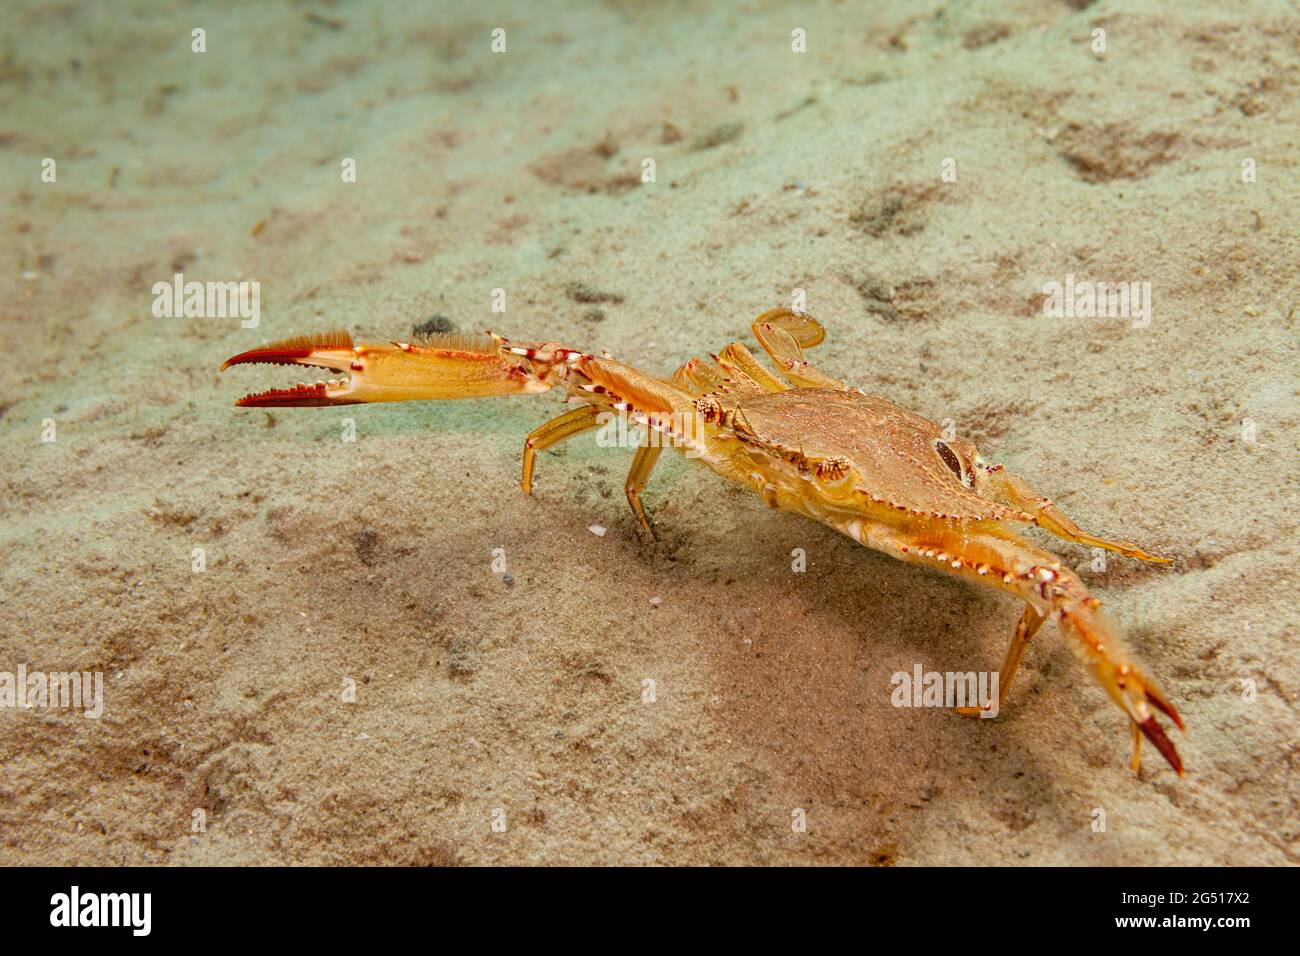 Ce crabe ocellate, Portunus sebae, a été photographié au large de Singer Island, en Floride, aux États-Unis, où on ne les trouve qu'occasionnellement. Ils sont plus co Banque D'Images